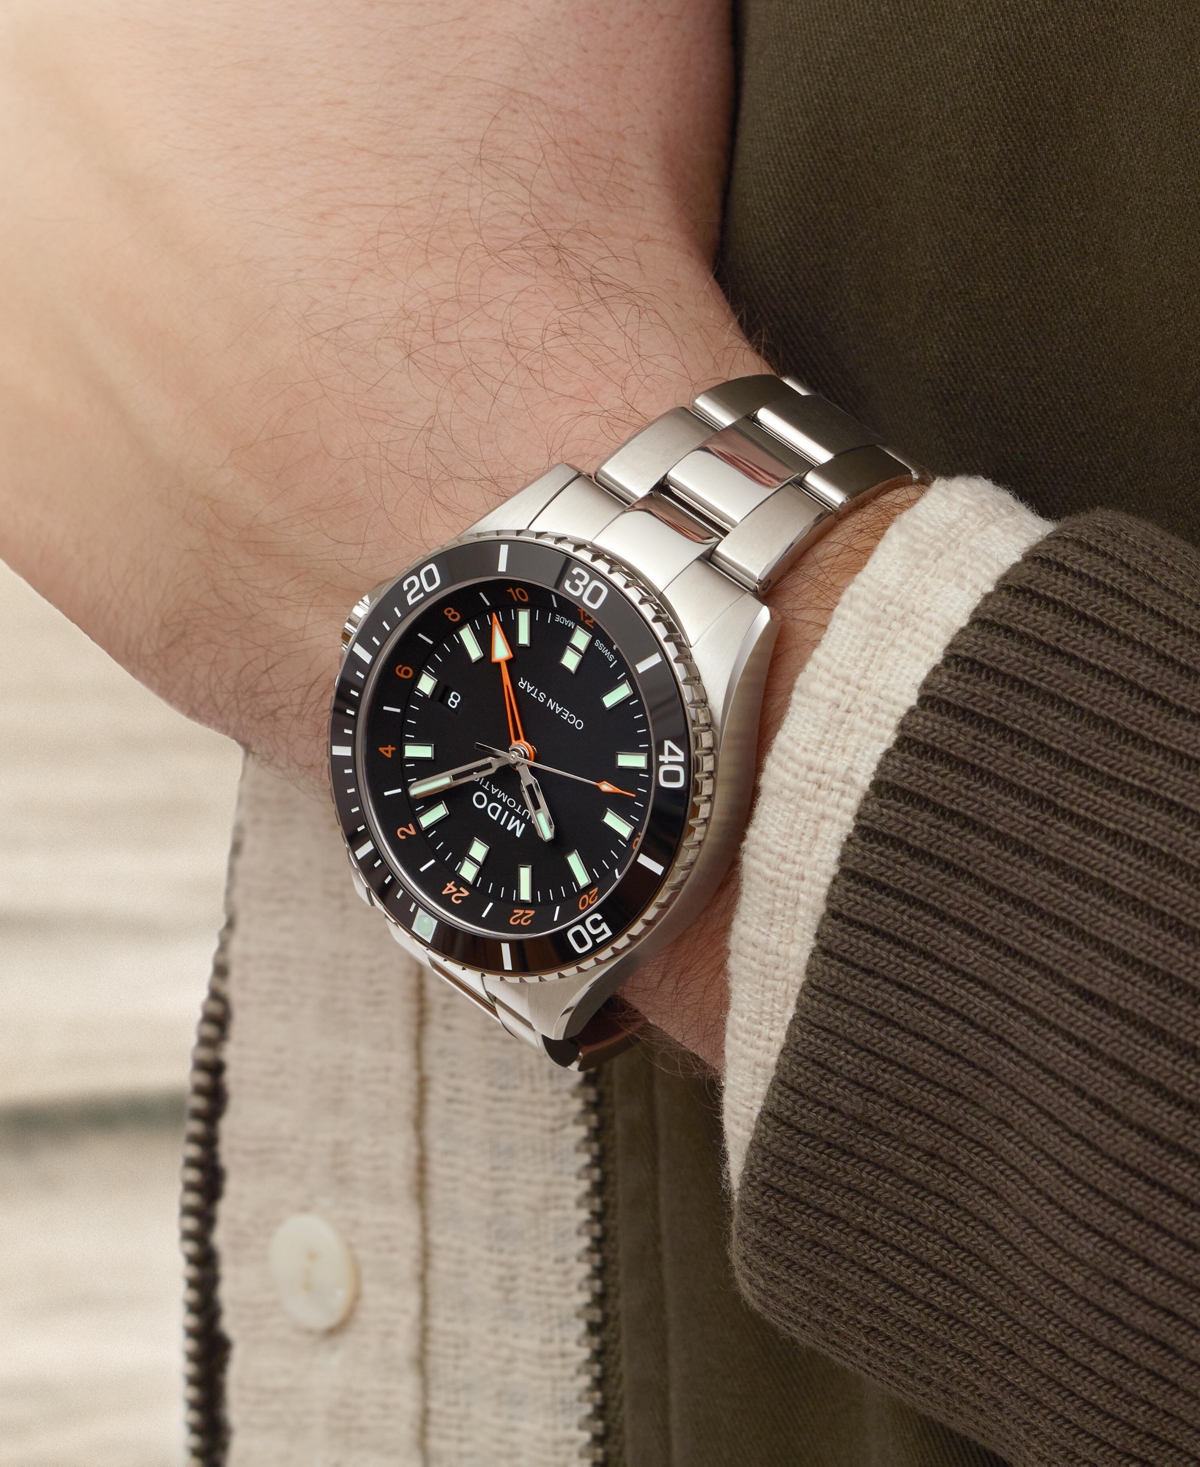 Shop Mido Men's Swiss Automatic Ocean Star Gmt Stainless Steel Bracelet Watch 44mm